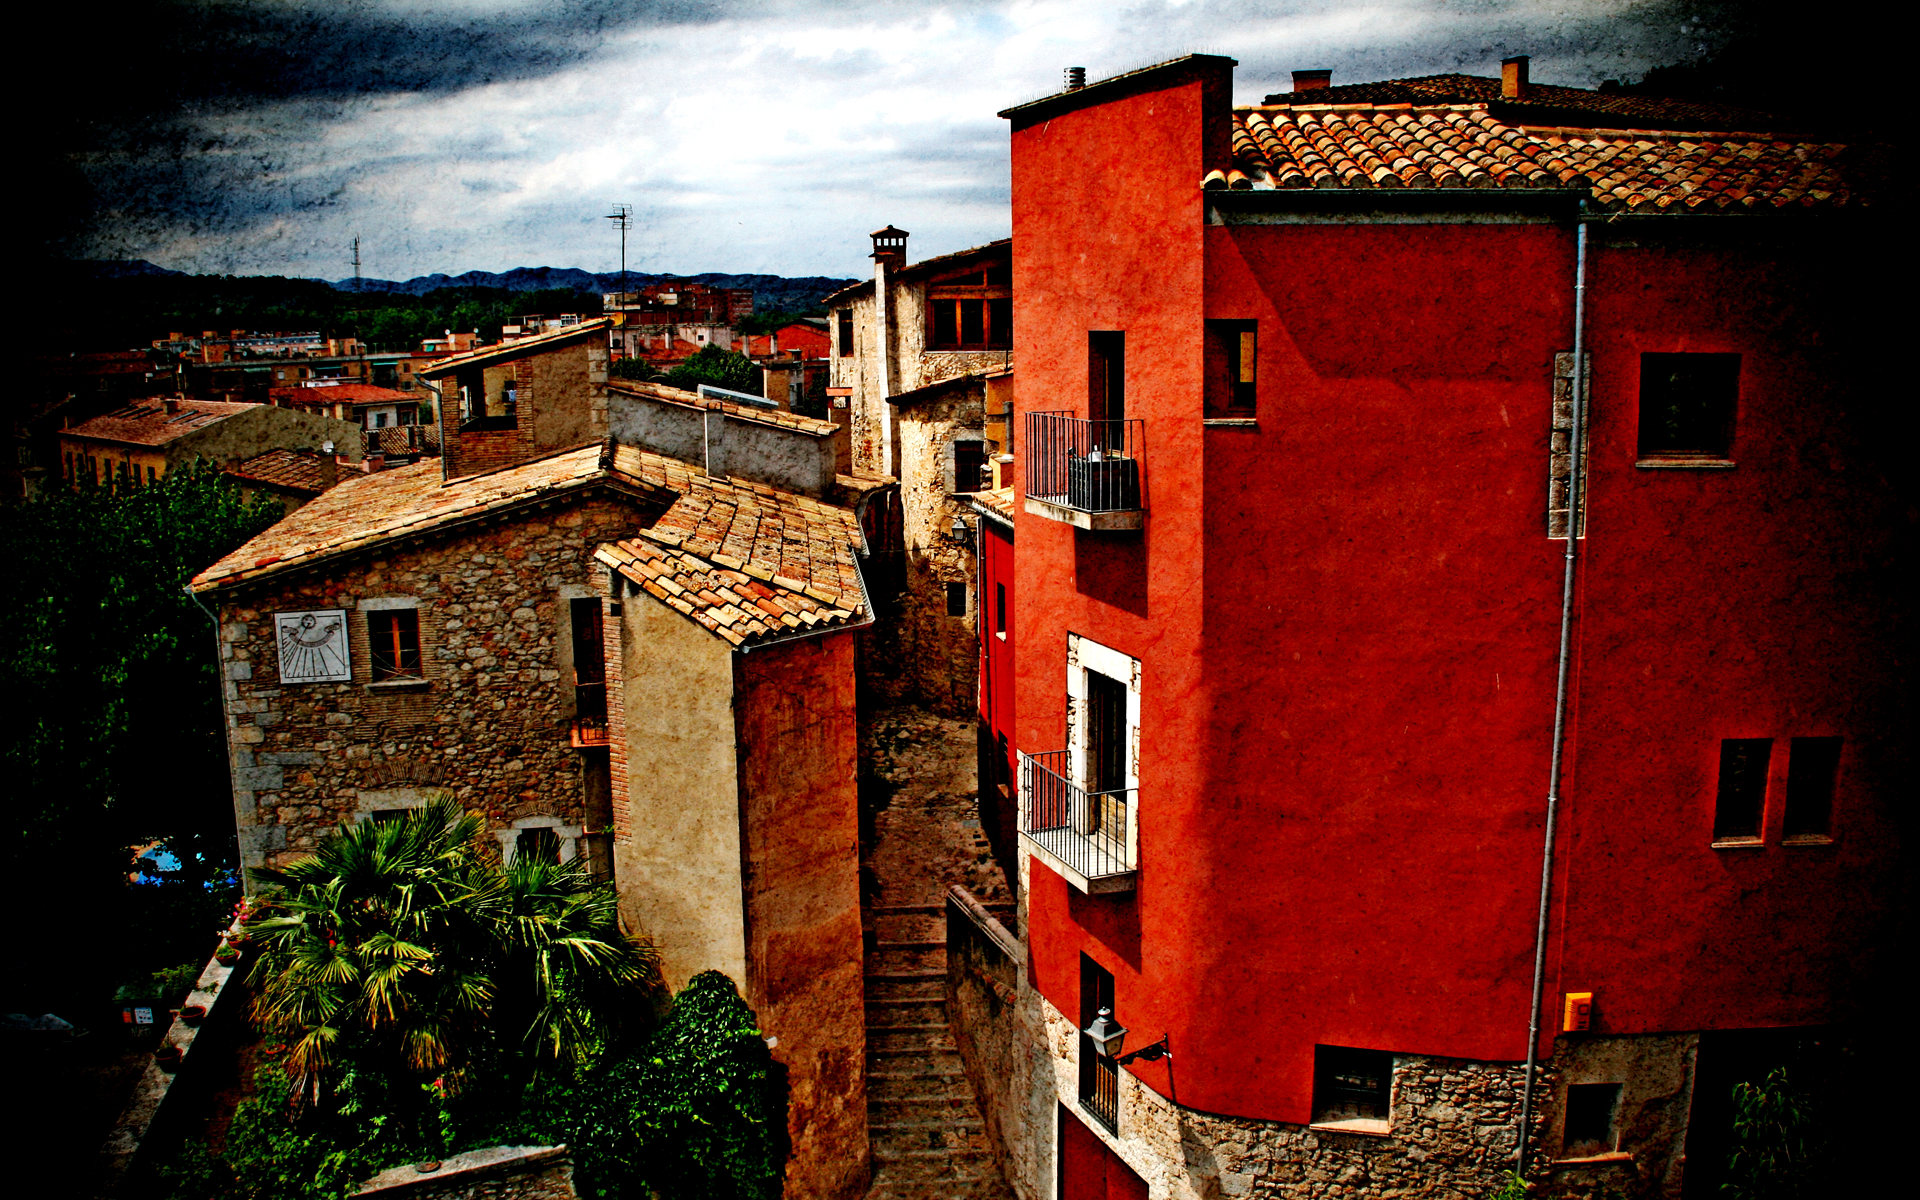 壁纸1920x1200HDR 西班牙城市映像 赫罗纳的红房子 西班牙 Girona 赫罗纳城市风景壁纸 HDR 西班牙城市映像壁纸 HDR 西班牙城市映像图片 HDR 西班牙城市映像素材 人文壁纸 人文图库 人文图片素材桌面壁纸